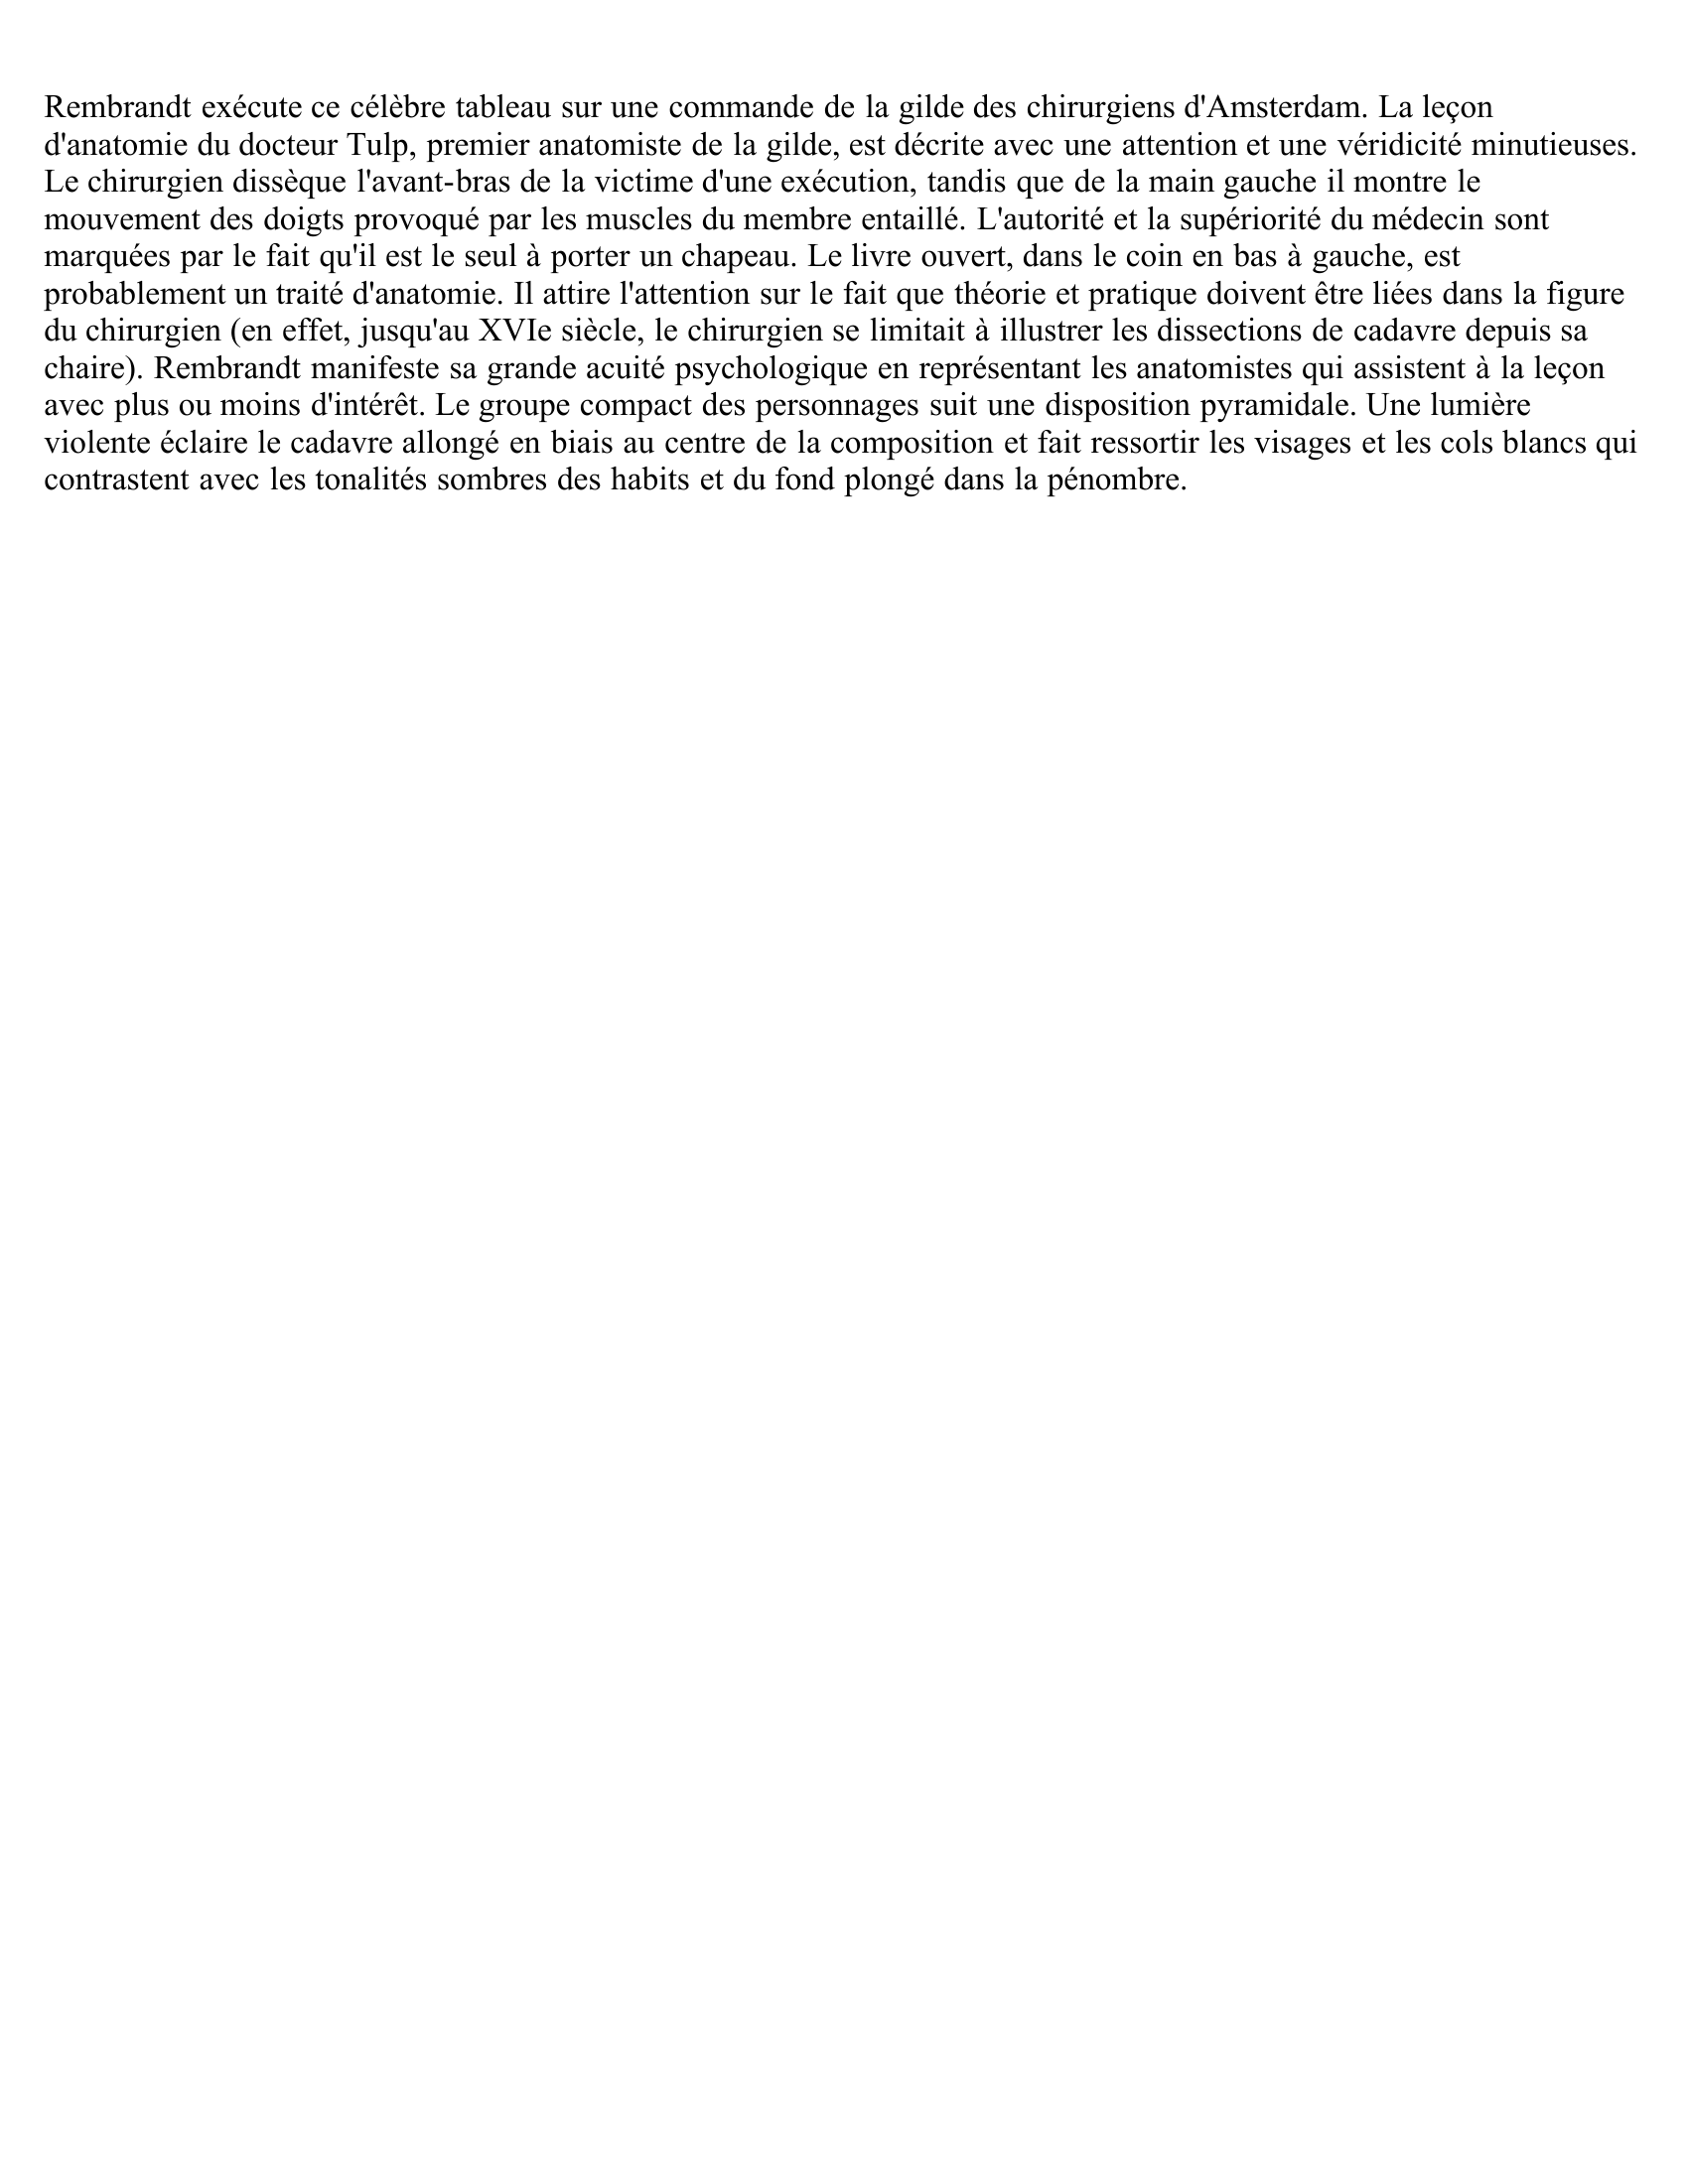 Prévisualisation du document LA LEÇON D'ANATOMIE DU PROFESSEUR TULP DE REMBRANDT